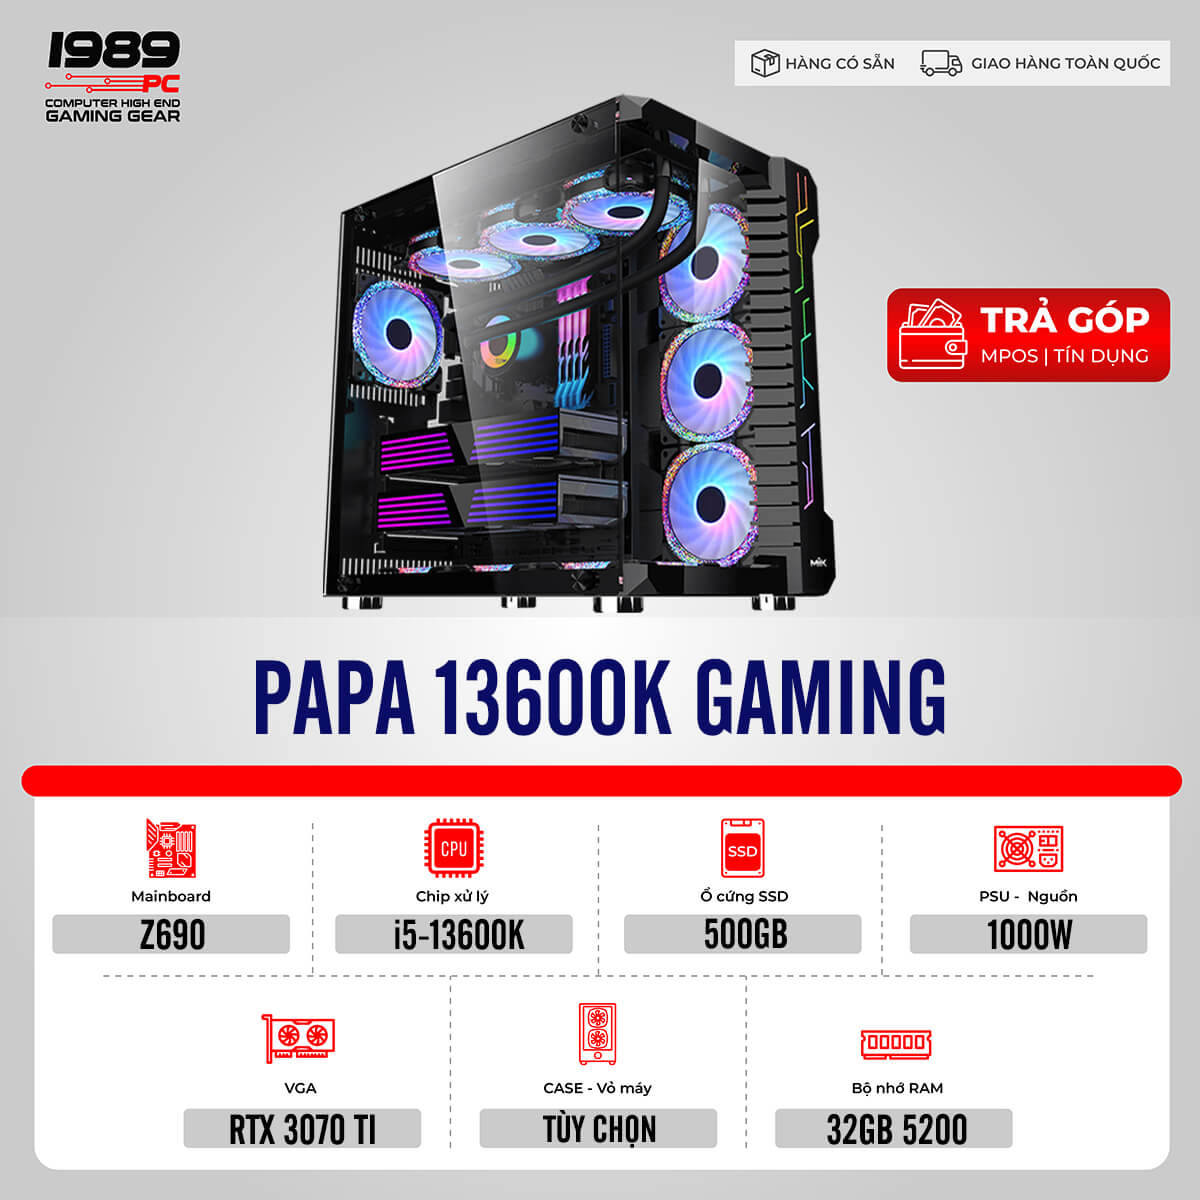 Bộ PC PAPA 13600K GAMING